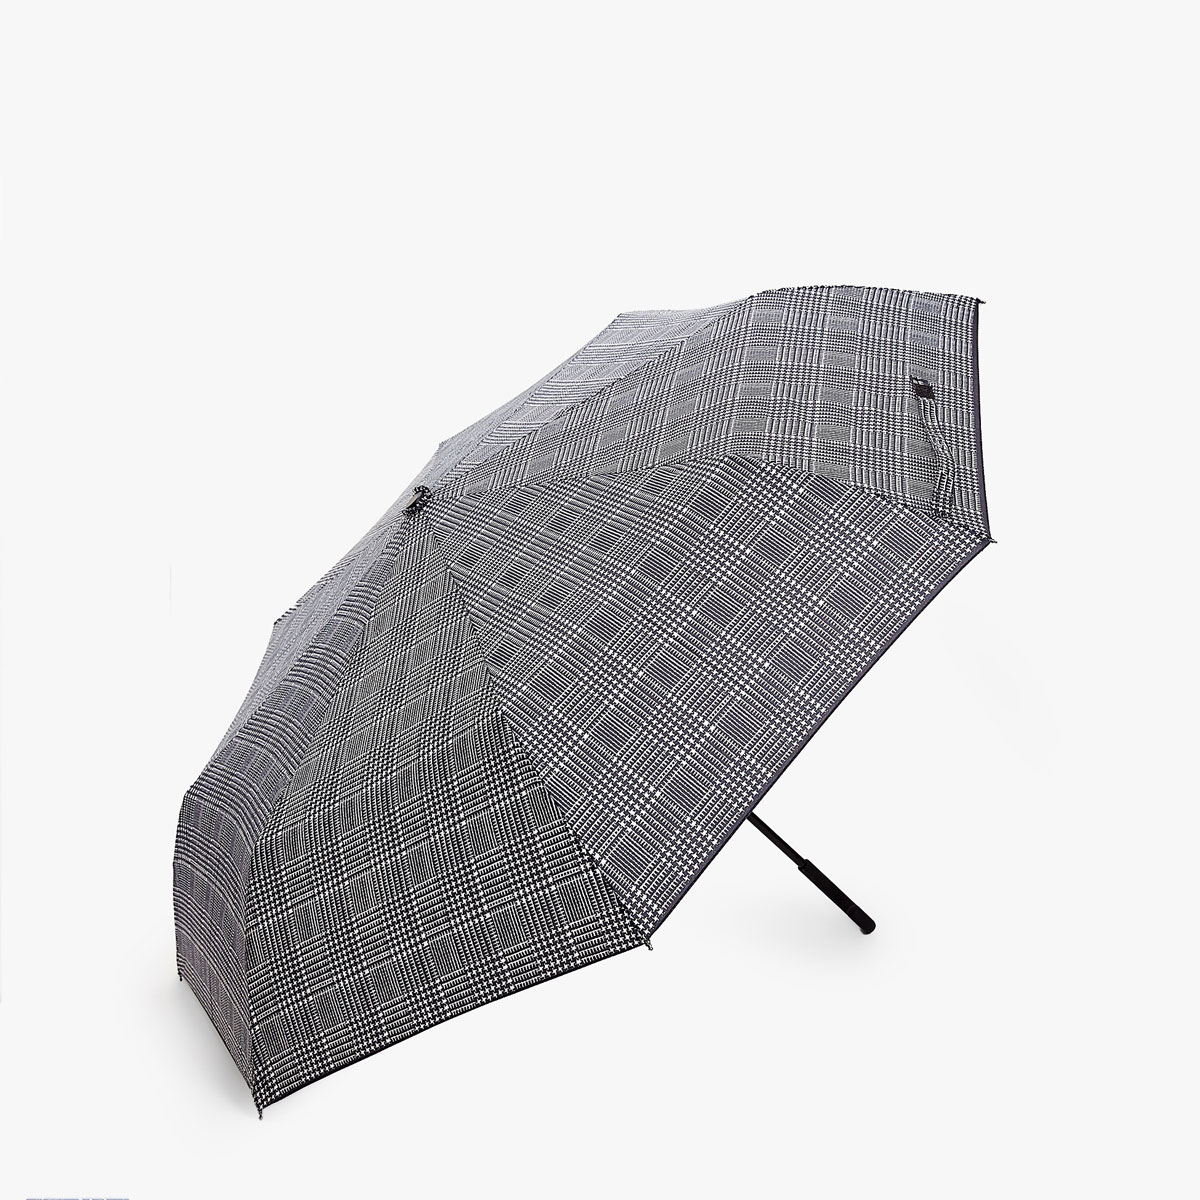 表参道で傘を買おう 雨の日も楽しくなるレイングッズが買えるお店 Pathee パシー